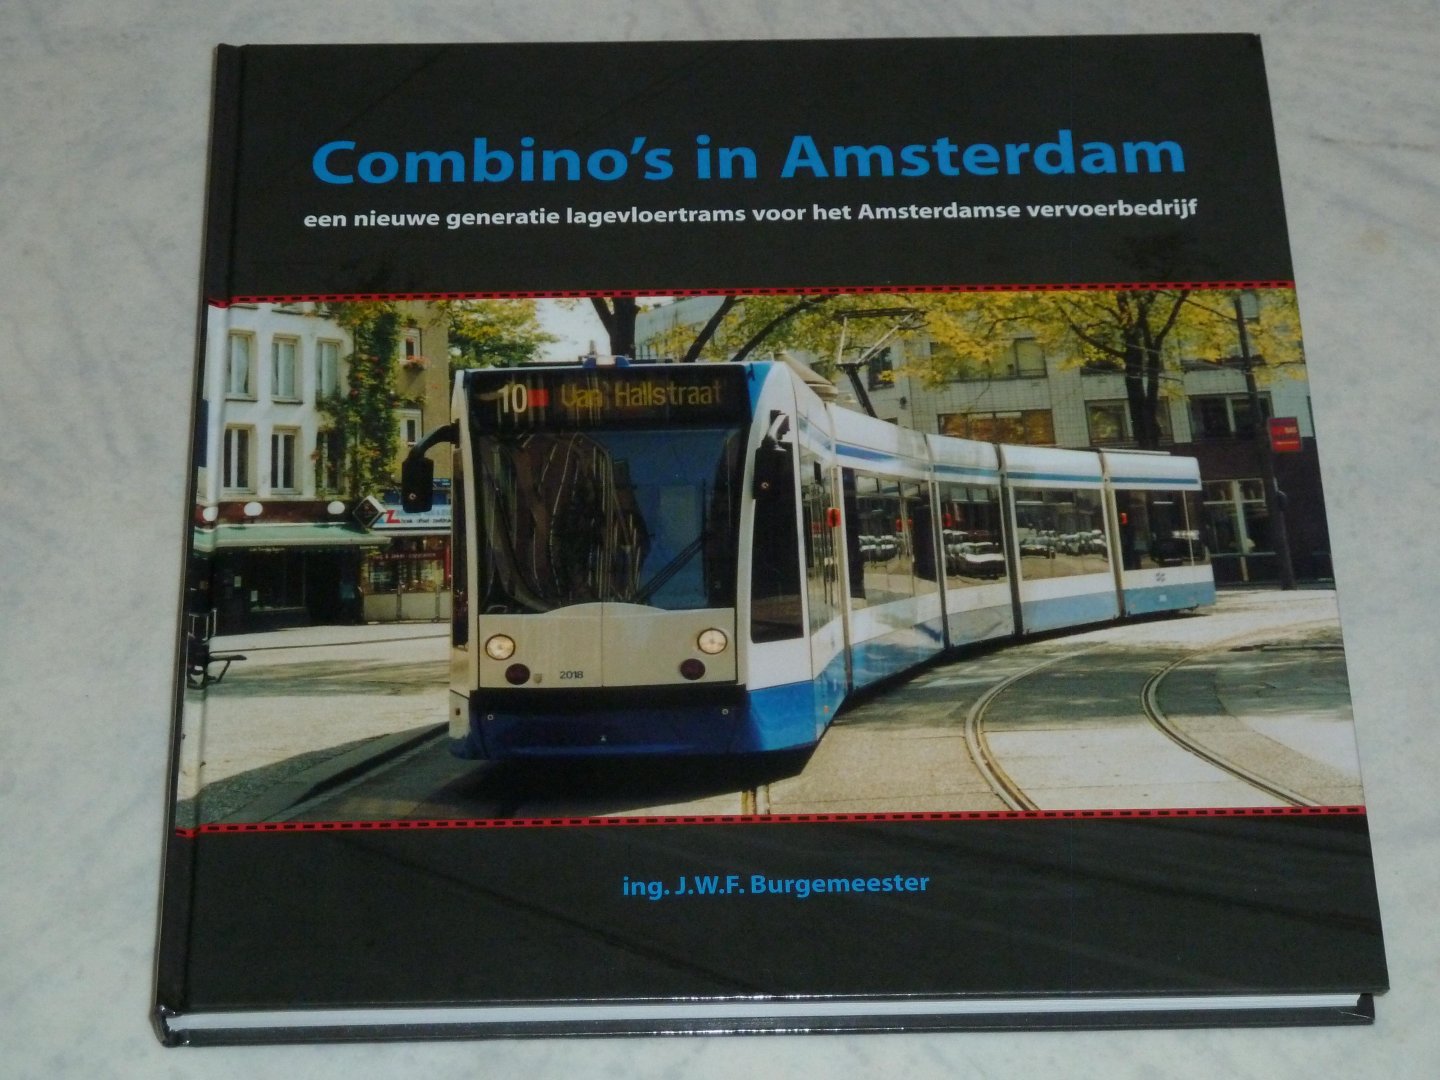 Burgemeester, Ing. J.W.F. - Combino's in Amsterdam. Een nieuwe generatie lagevloertrams voor het Amsterdamse vervoerbedrijf.